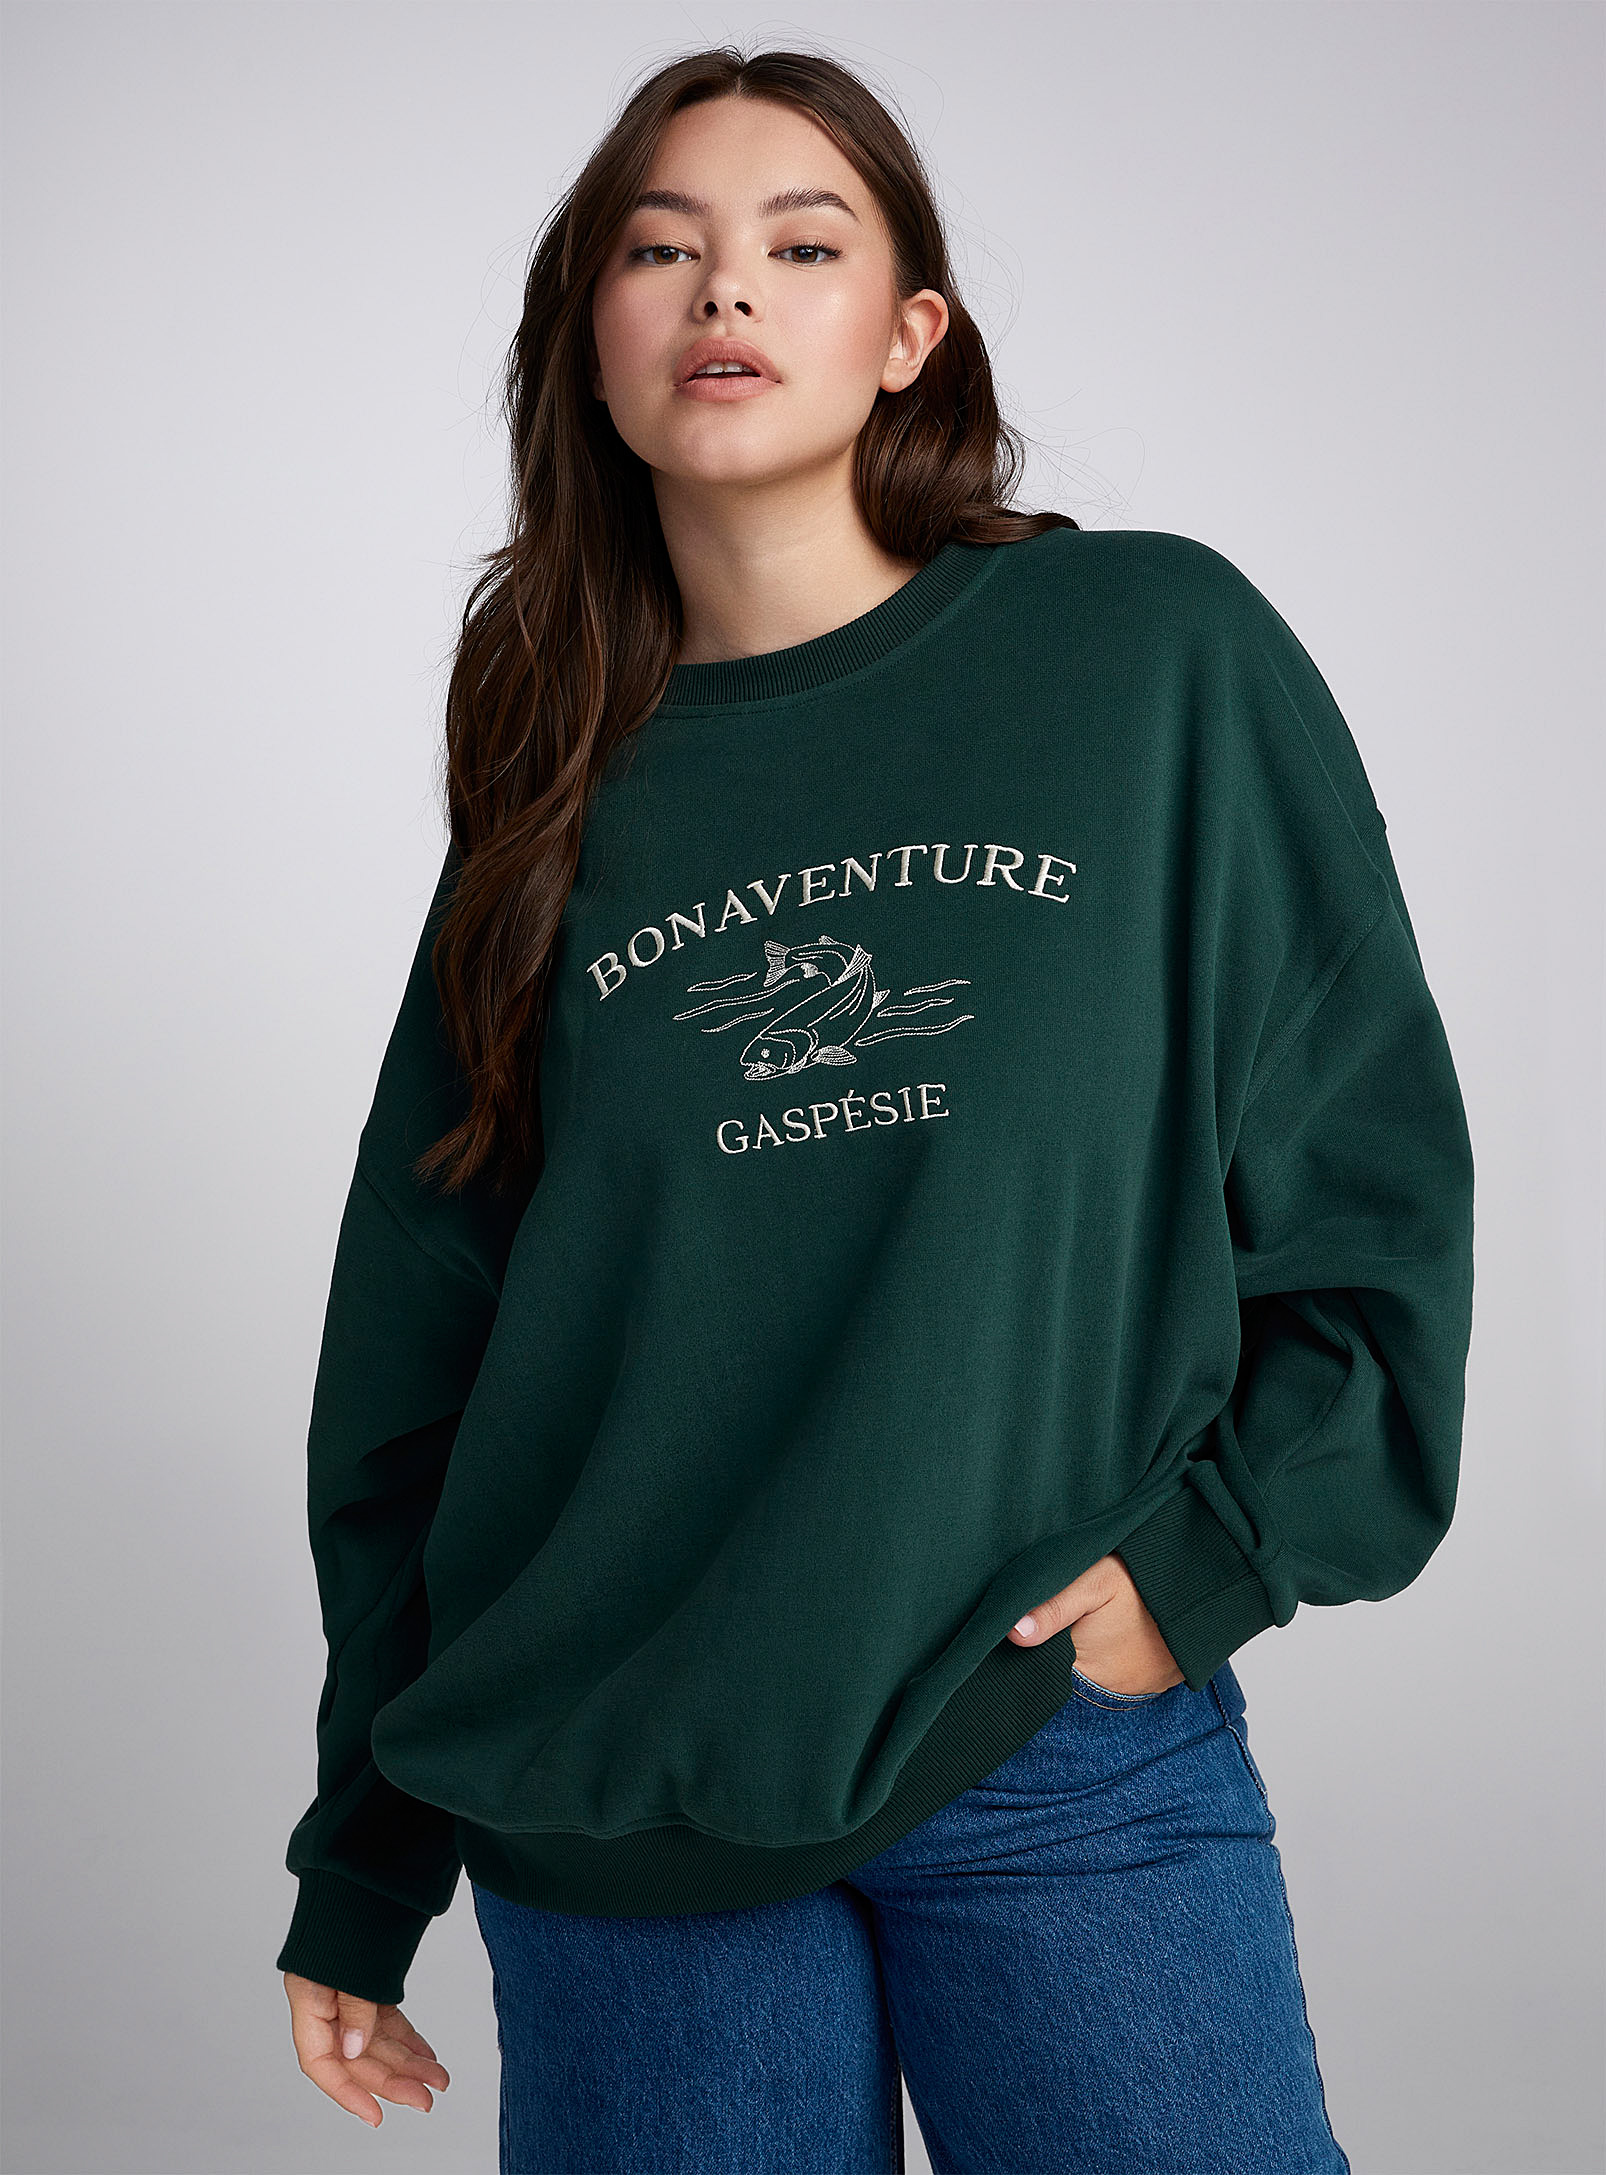 Twik Oversized Popular Destination Sweatshirt In Bottle Green